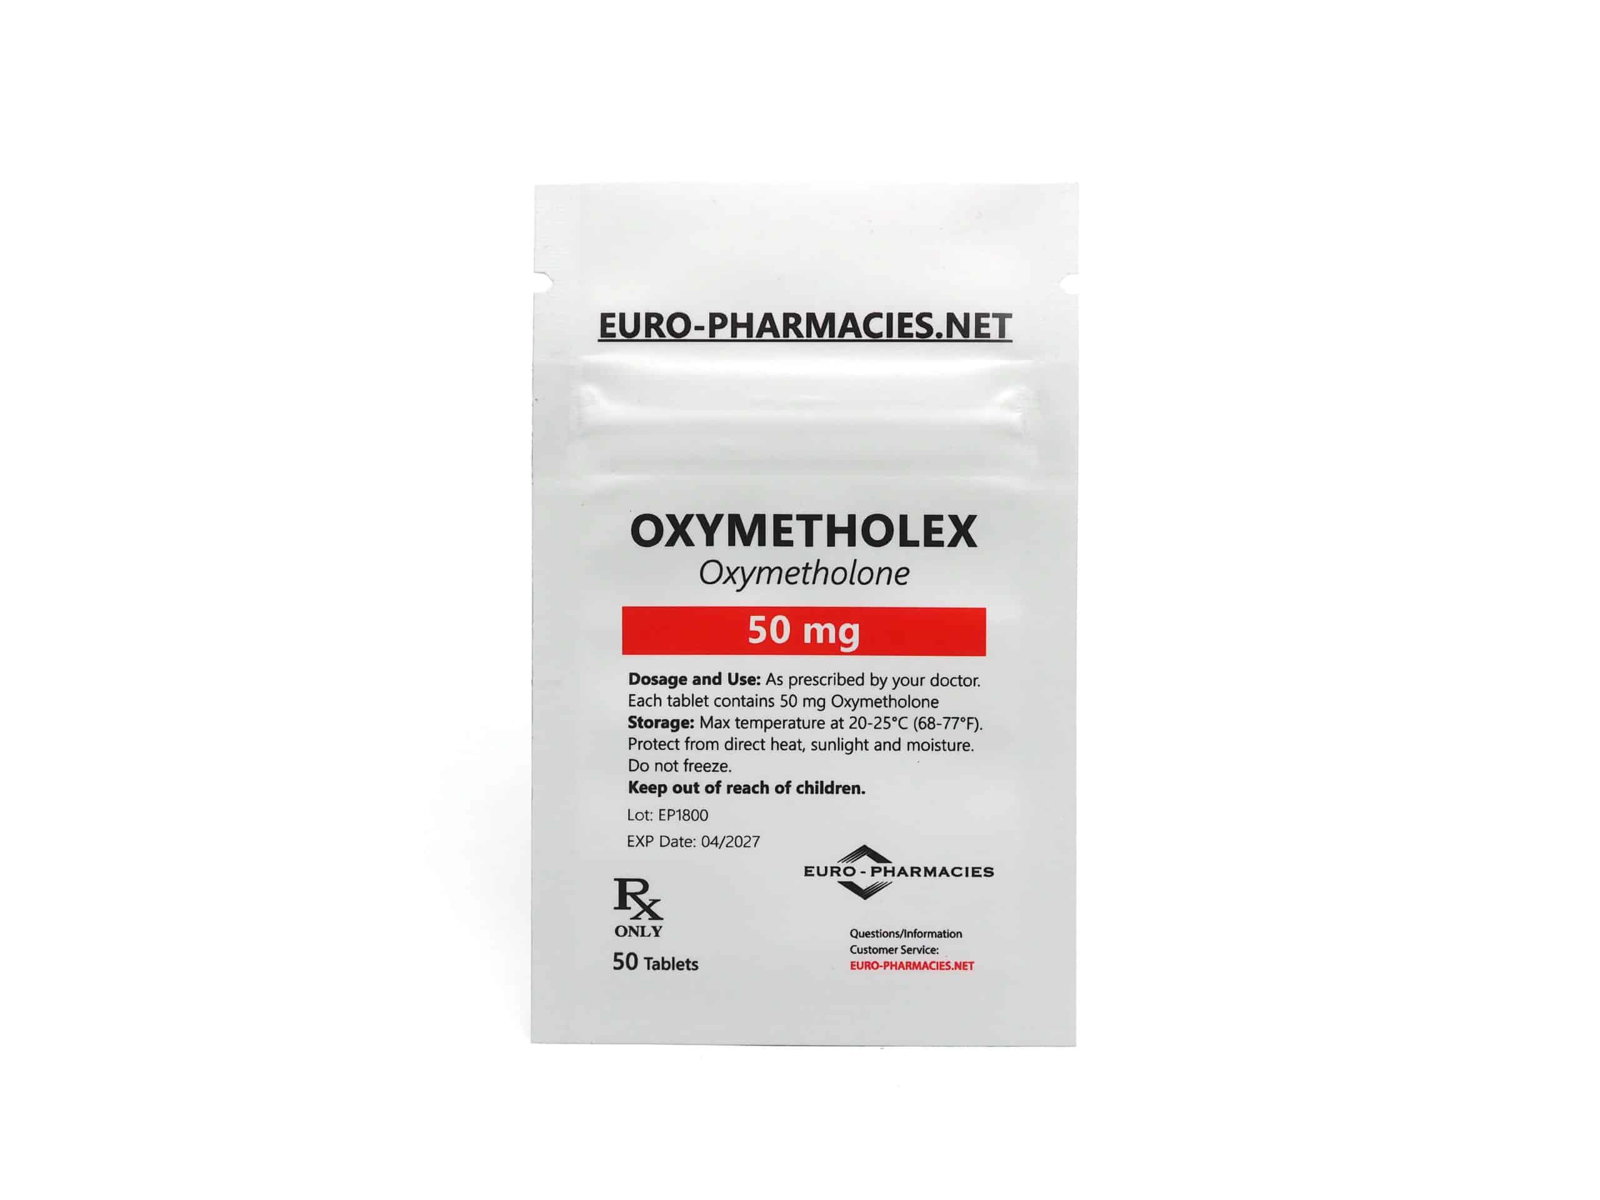 Eurofarmacias Bolsa Oxymetholex (Anadrol)